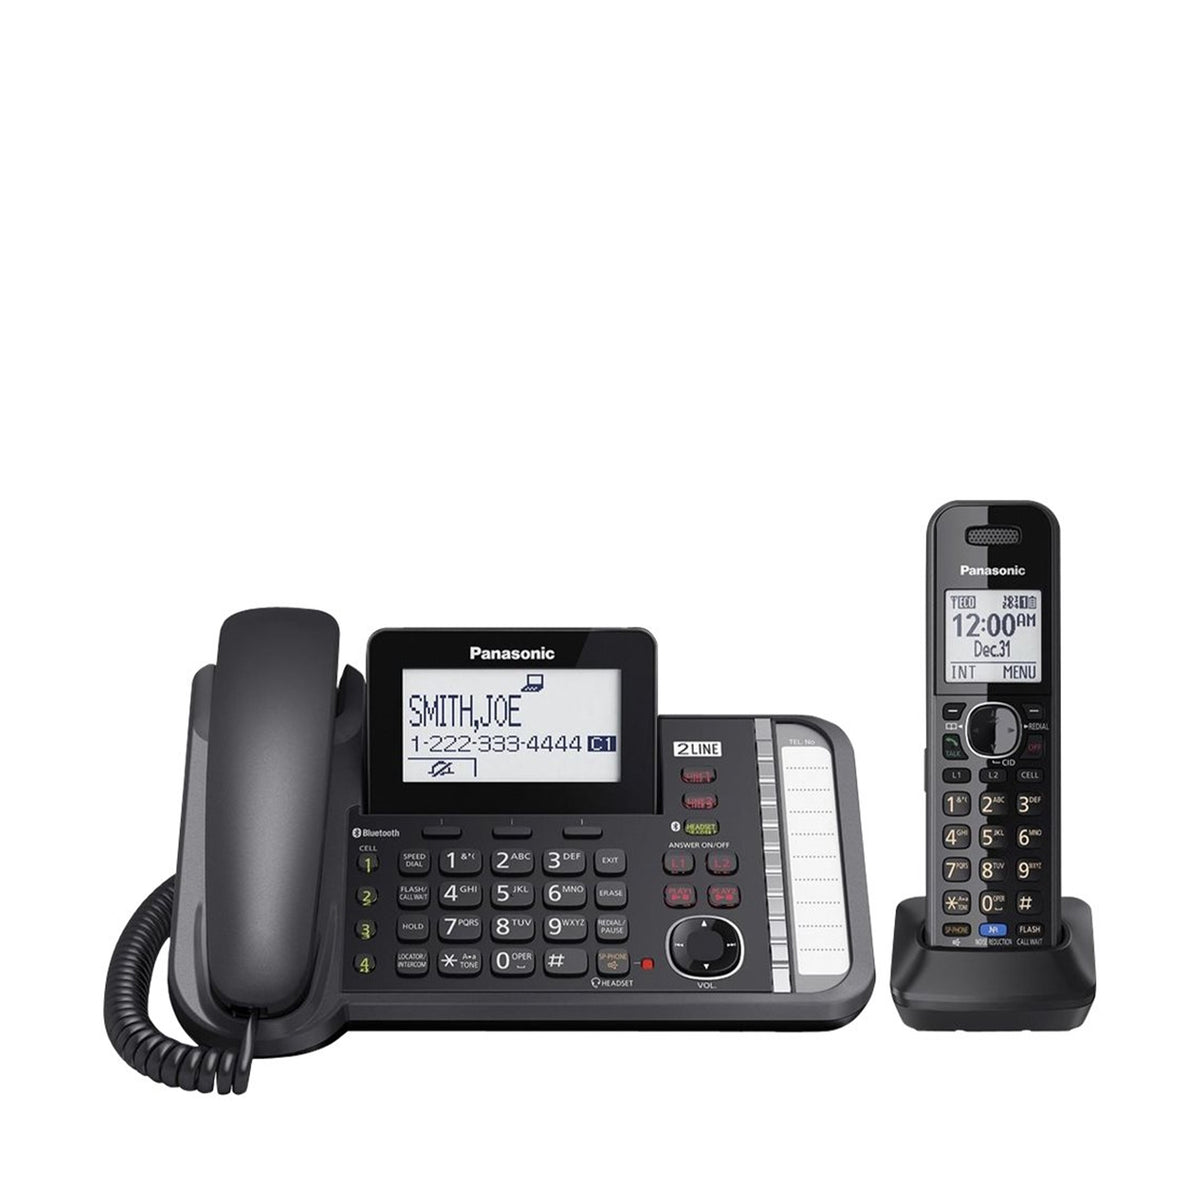 Ripley - TELEFONO FIJO PANASONIC KX-TG4062